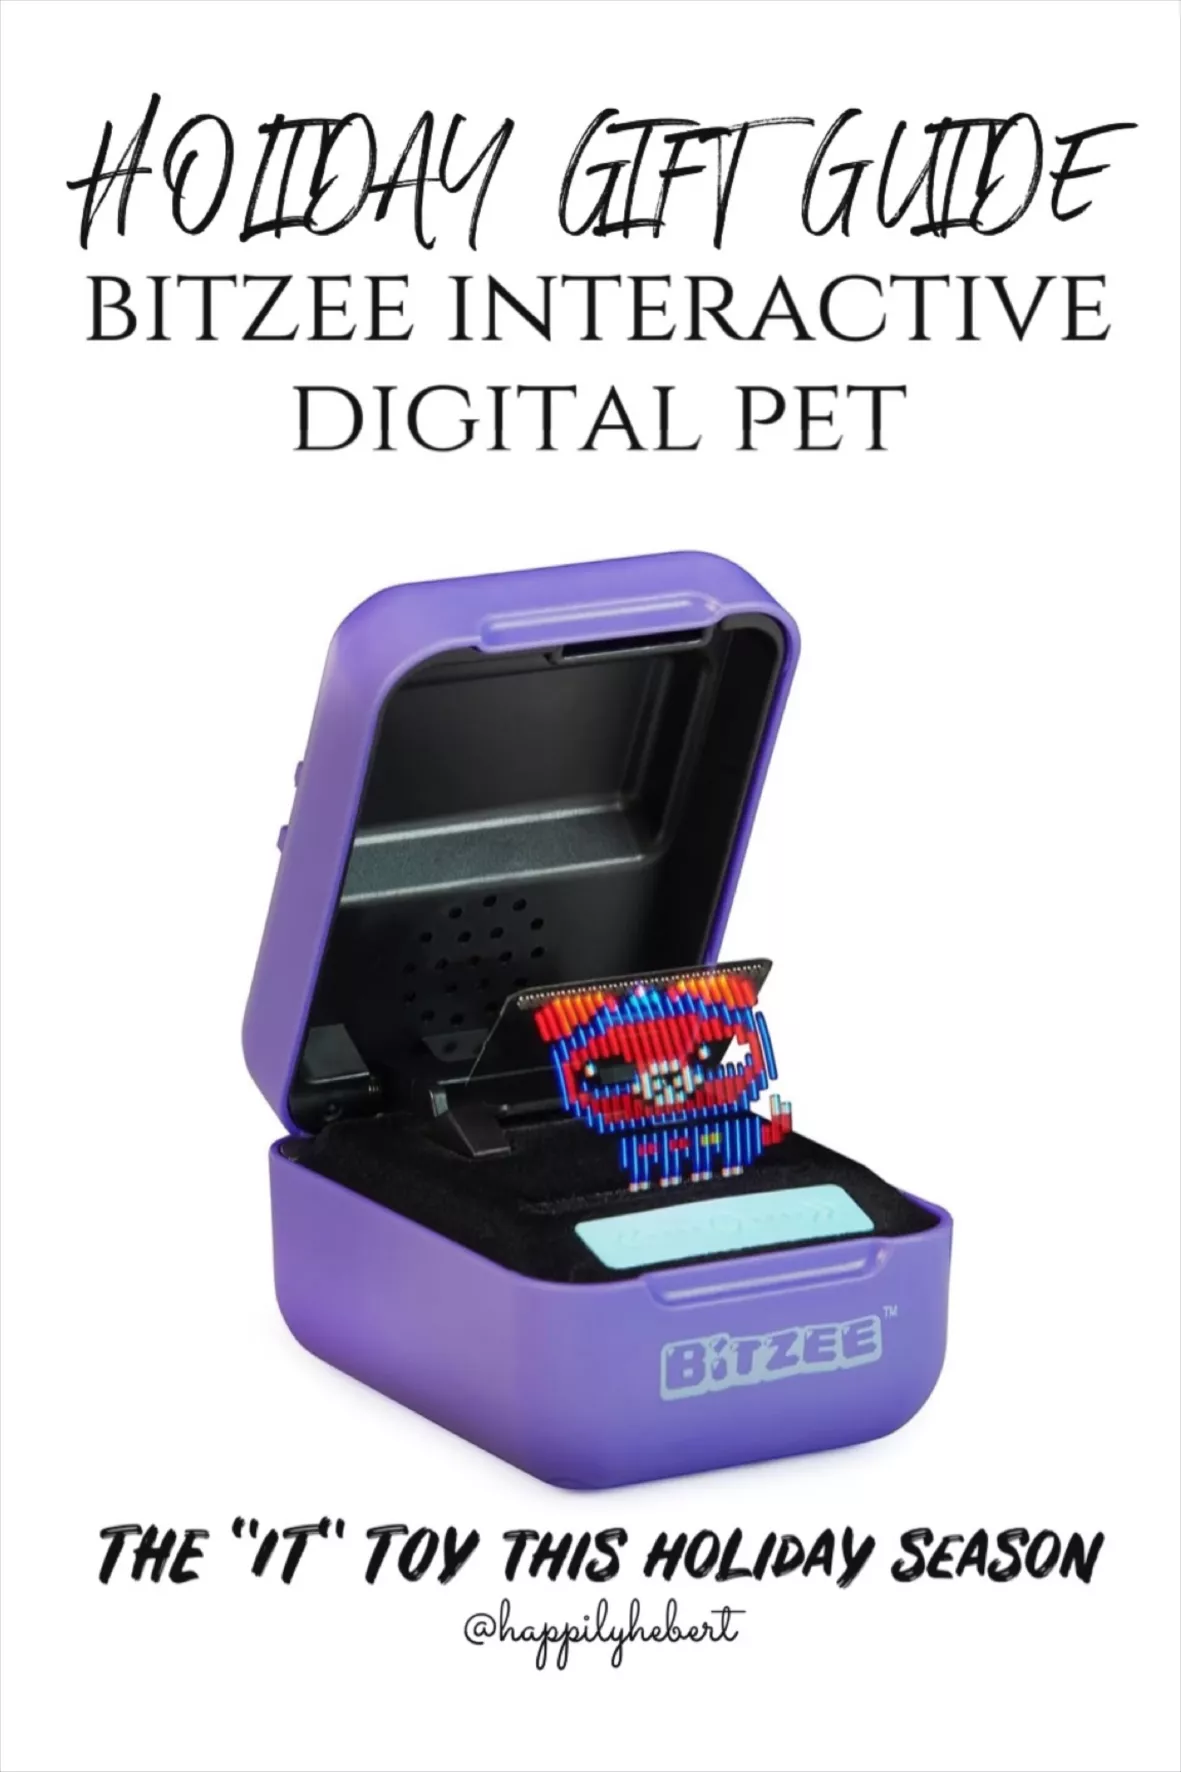 Bitzee Interactive Digital Pet : Target